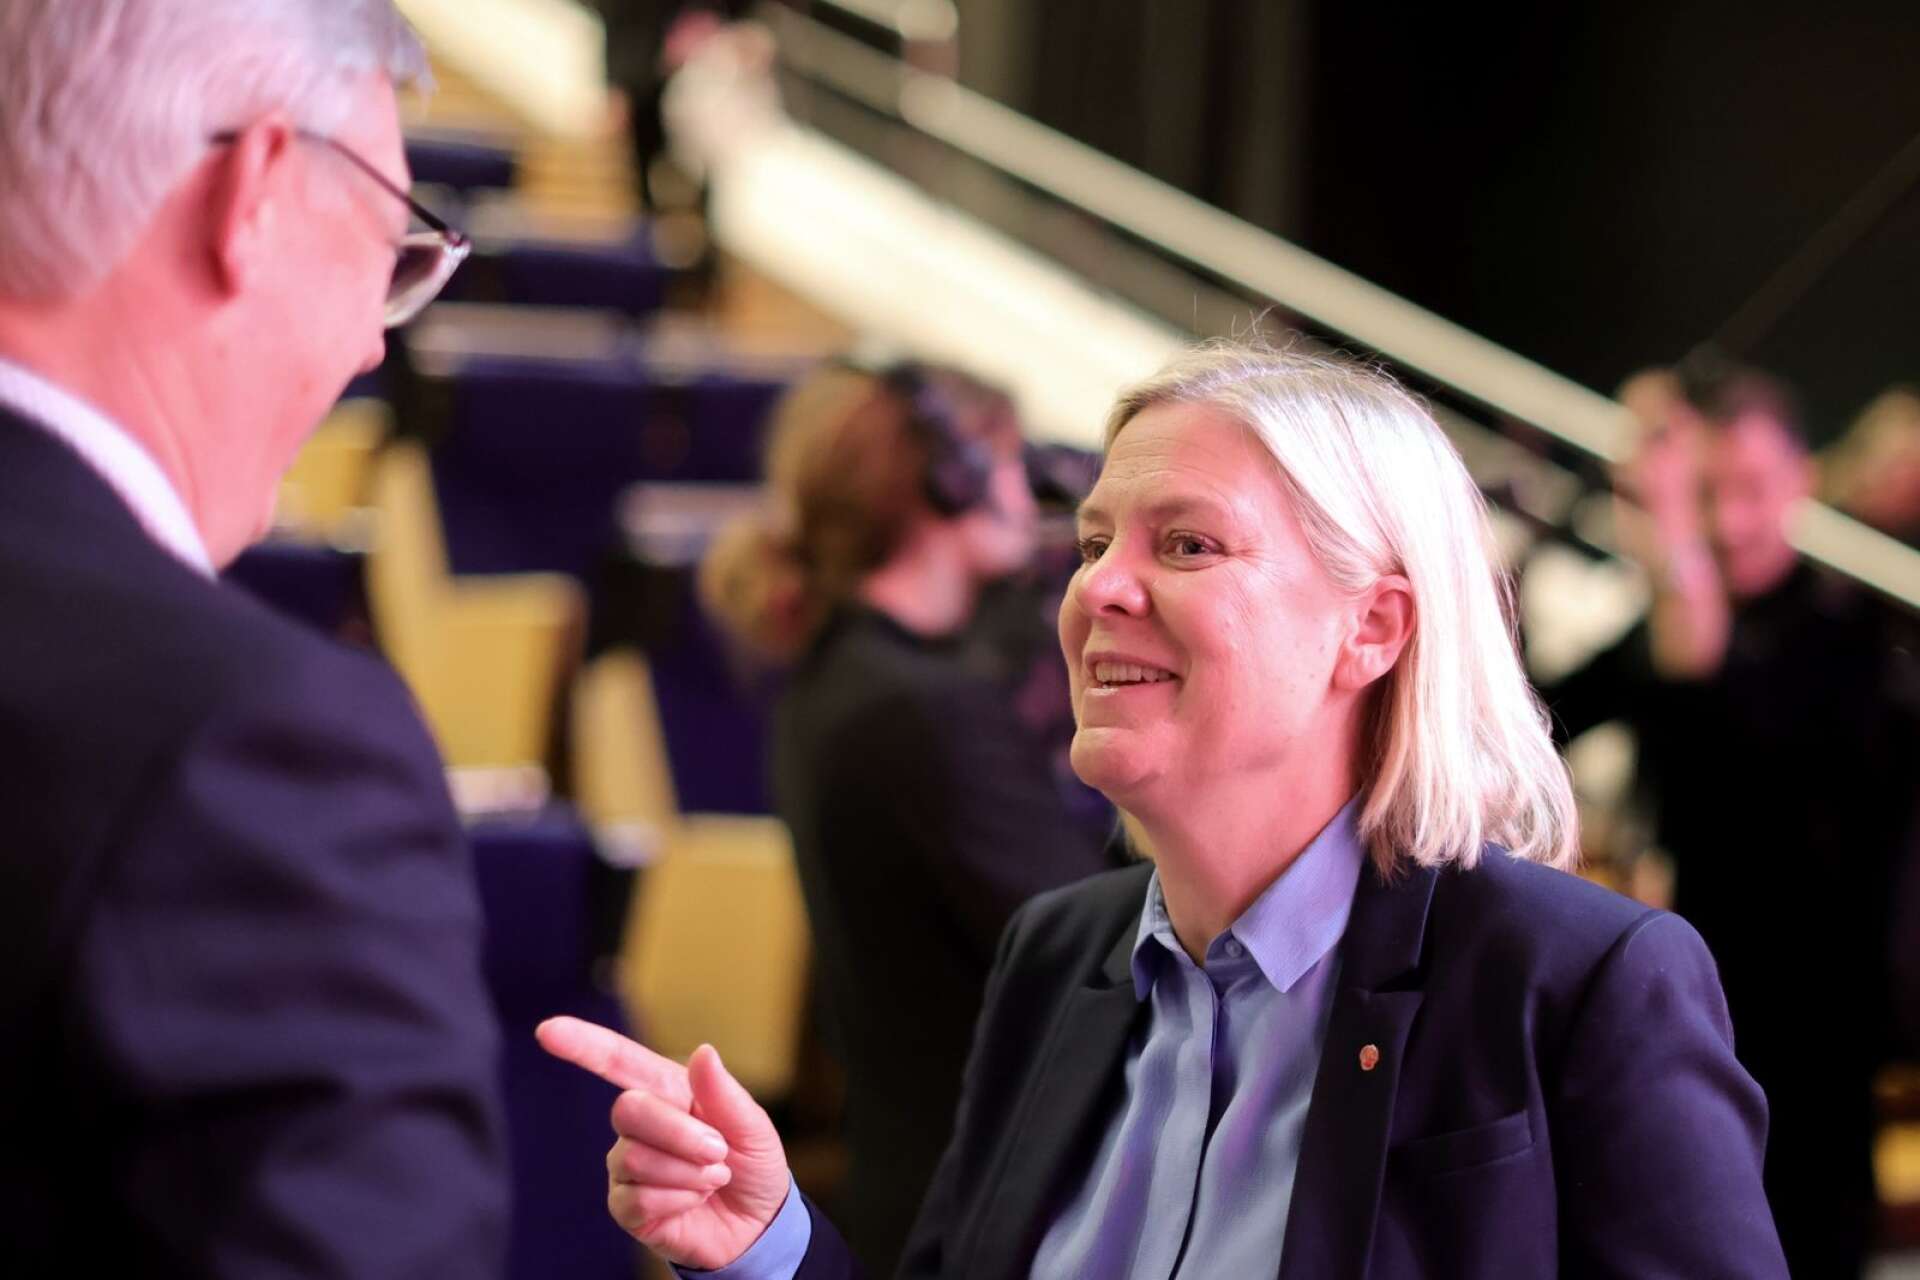 På torsdag väljs Magdalena Andersson till partiordförande för Socialdemokraterna vid partiets kongress i Göteborg. Då måste hon återuppta en tydlig socialdemokratisk röst för kärnvapennedrustning, kräver debattörerna. 